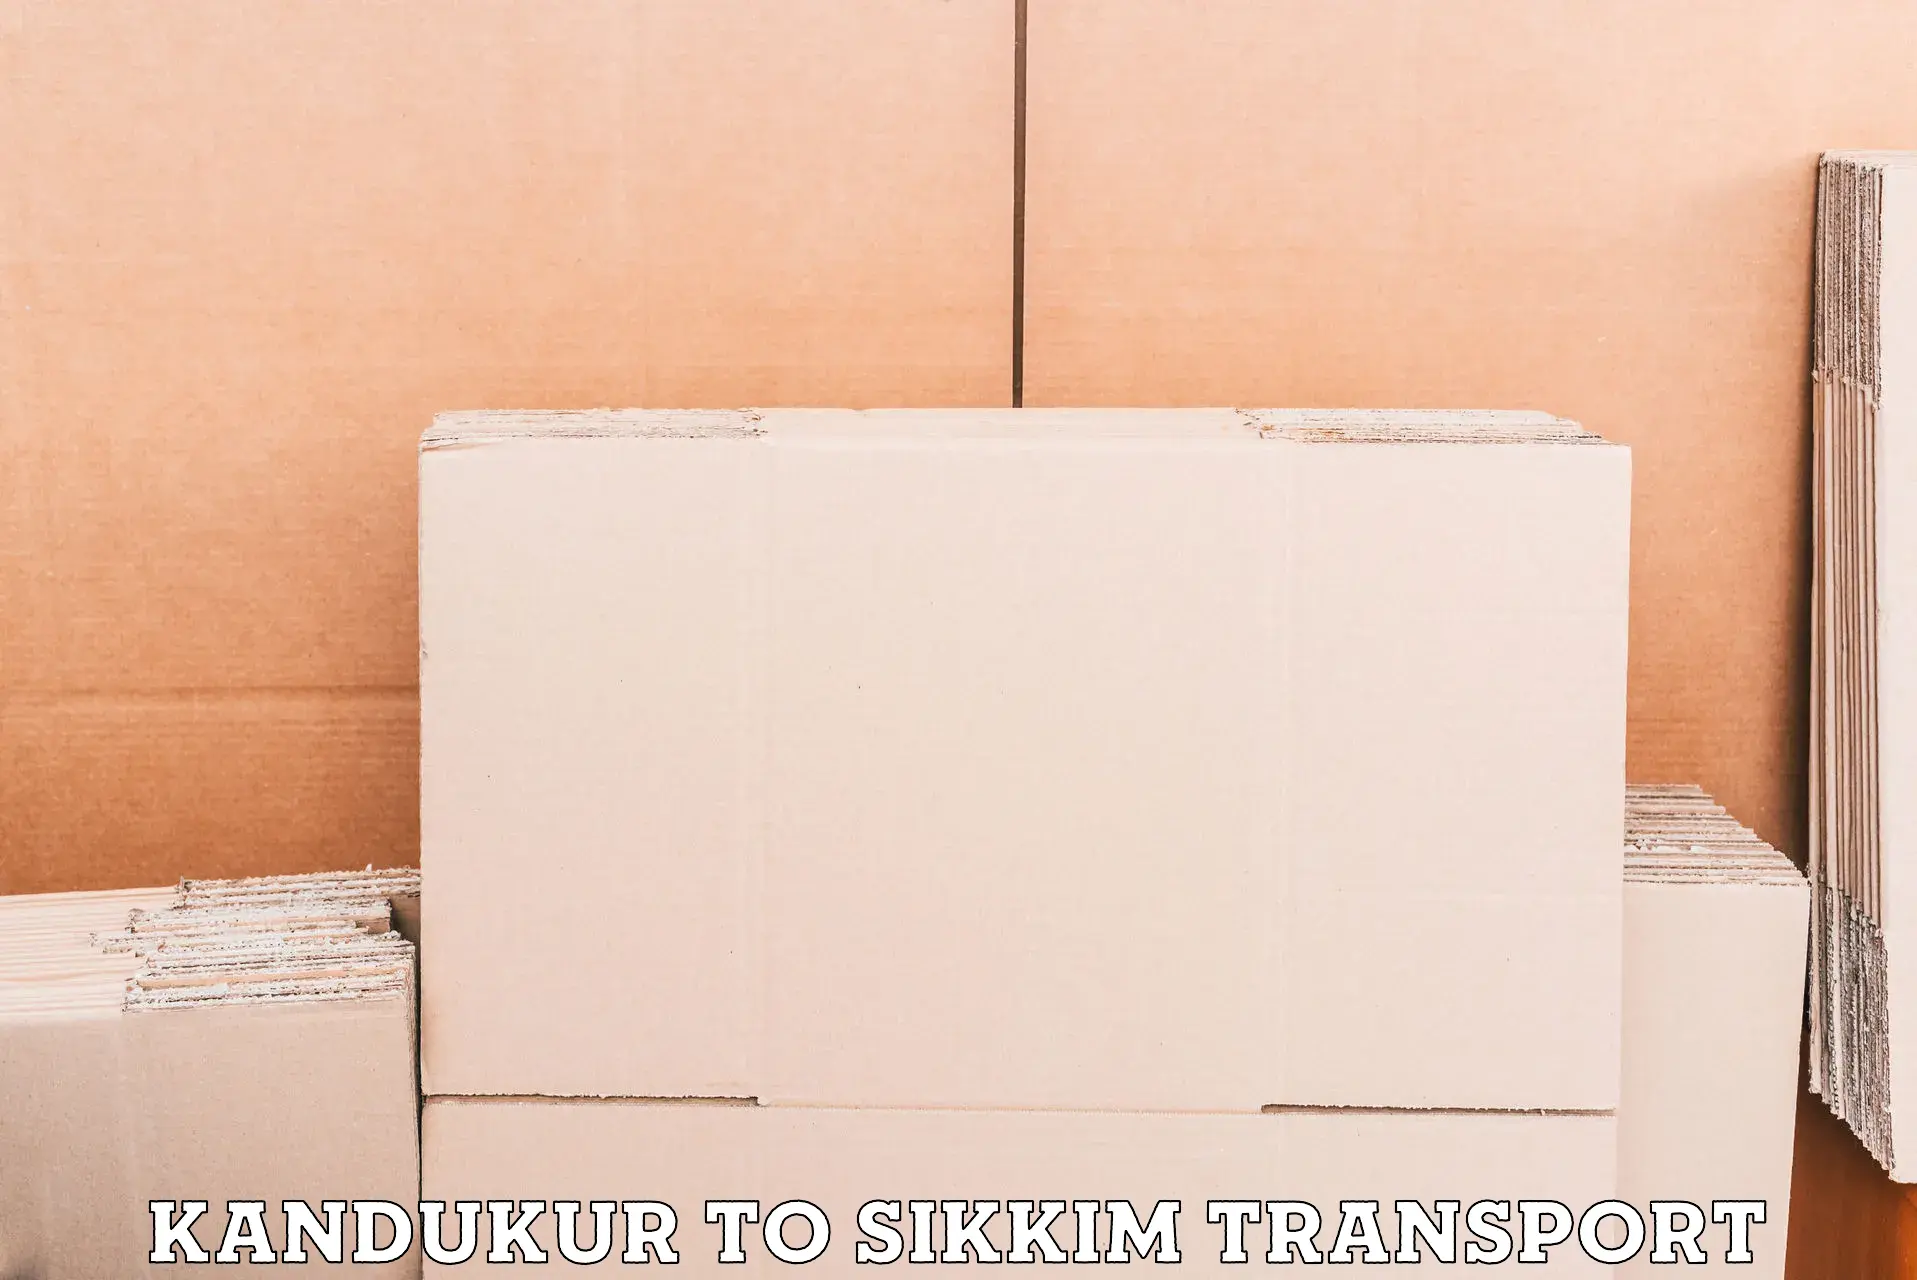 Shipping partner Kandukur to East Sikkim